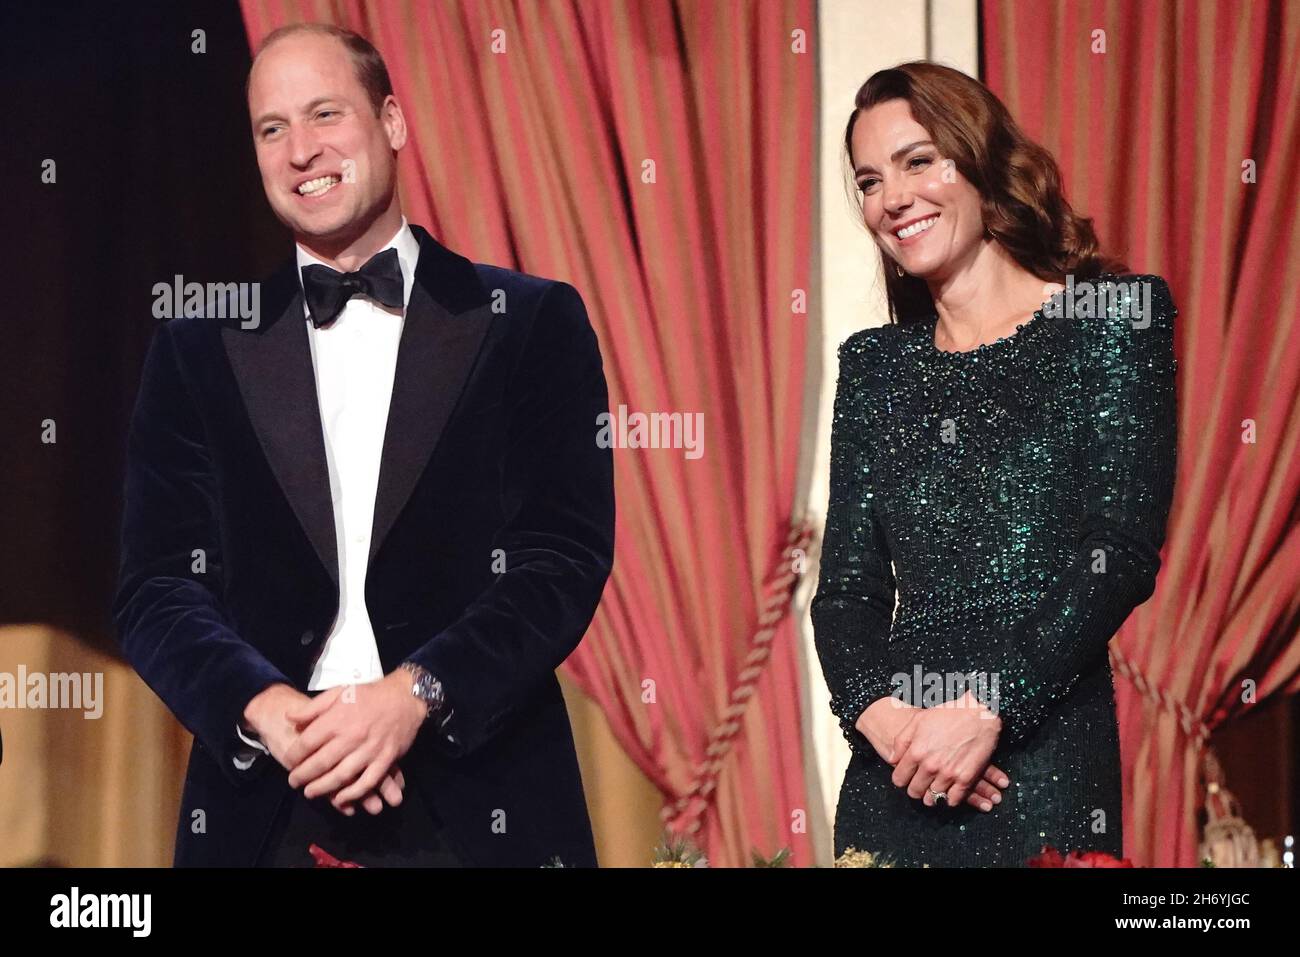 Le duc et la duchesse de Cambridge après avoir regardé la Royal Variety Performance au Royal Albert Hall, Londres.Date de la photo: Jeudi 18 novembre 2021. Banque D'Images